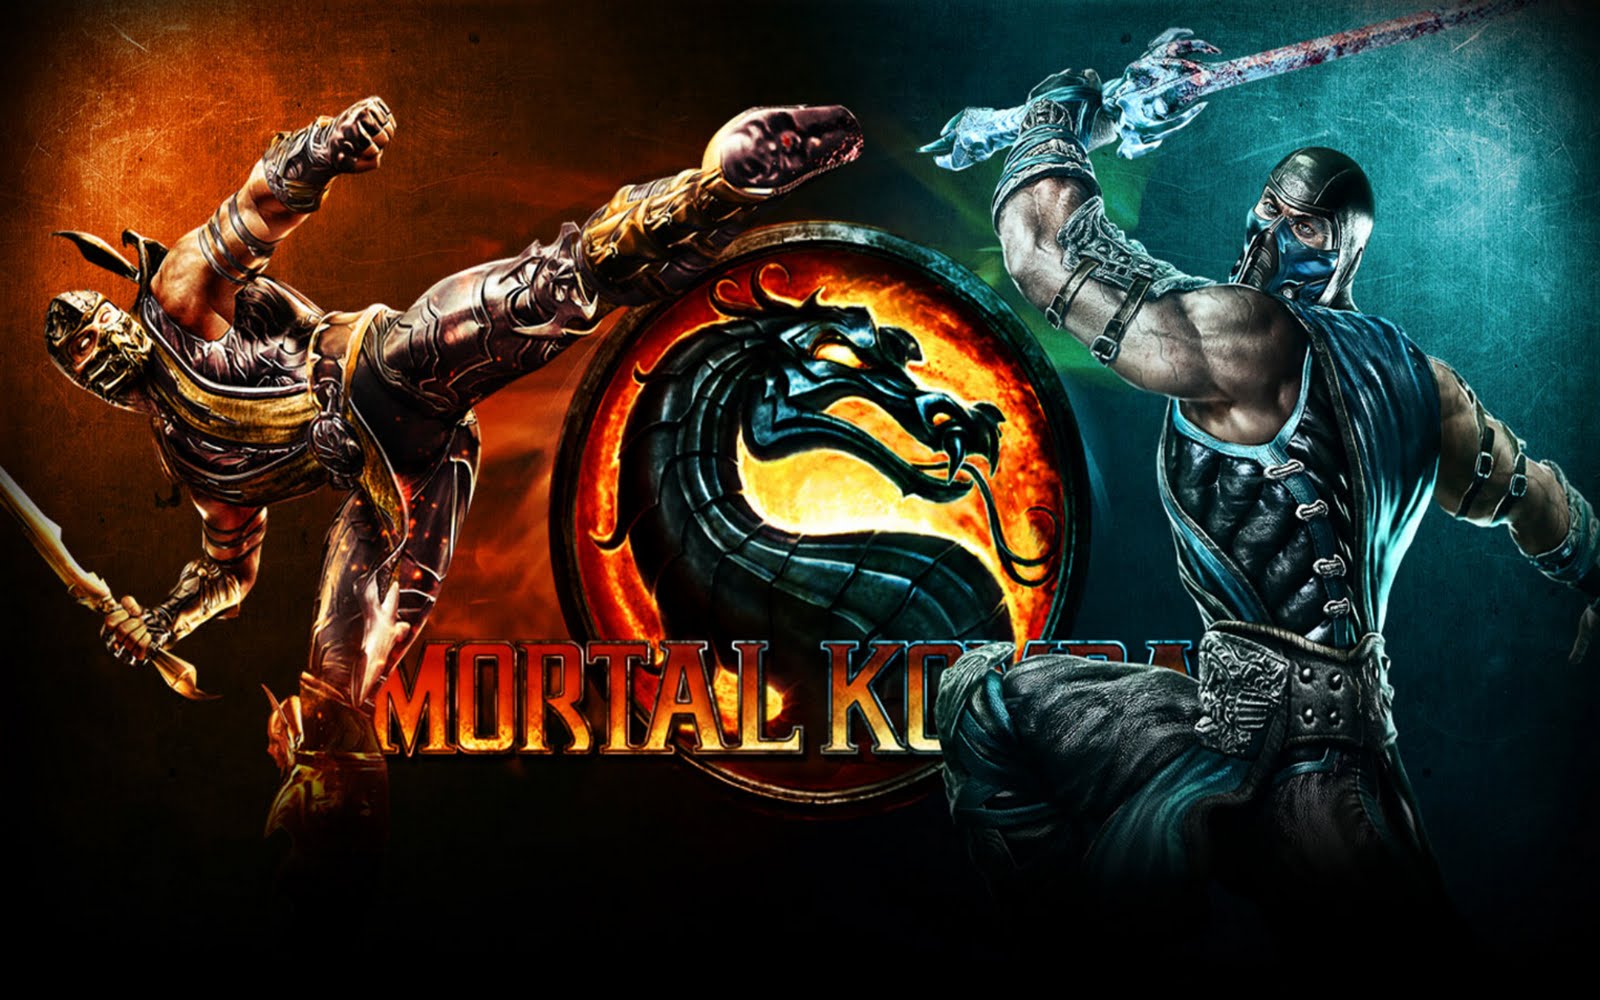 Mortal Kombat HD Wallpaper 1920x1080 ID25037